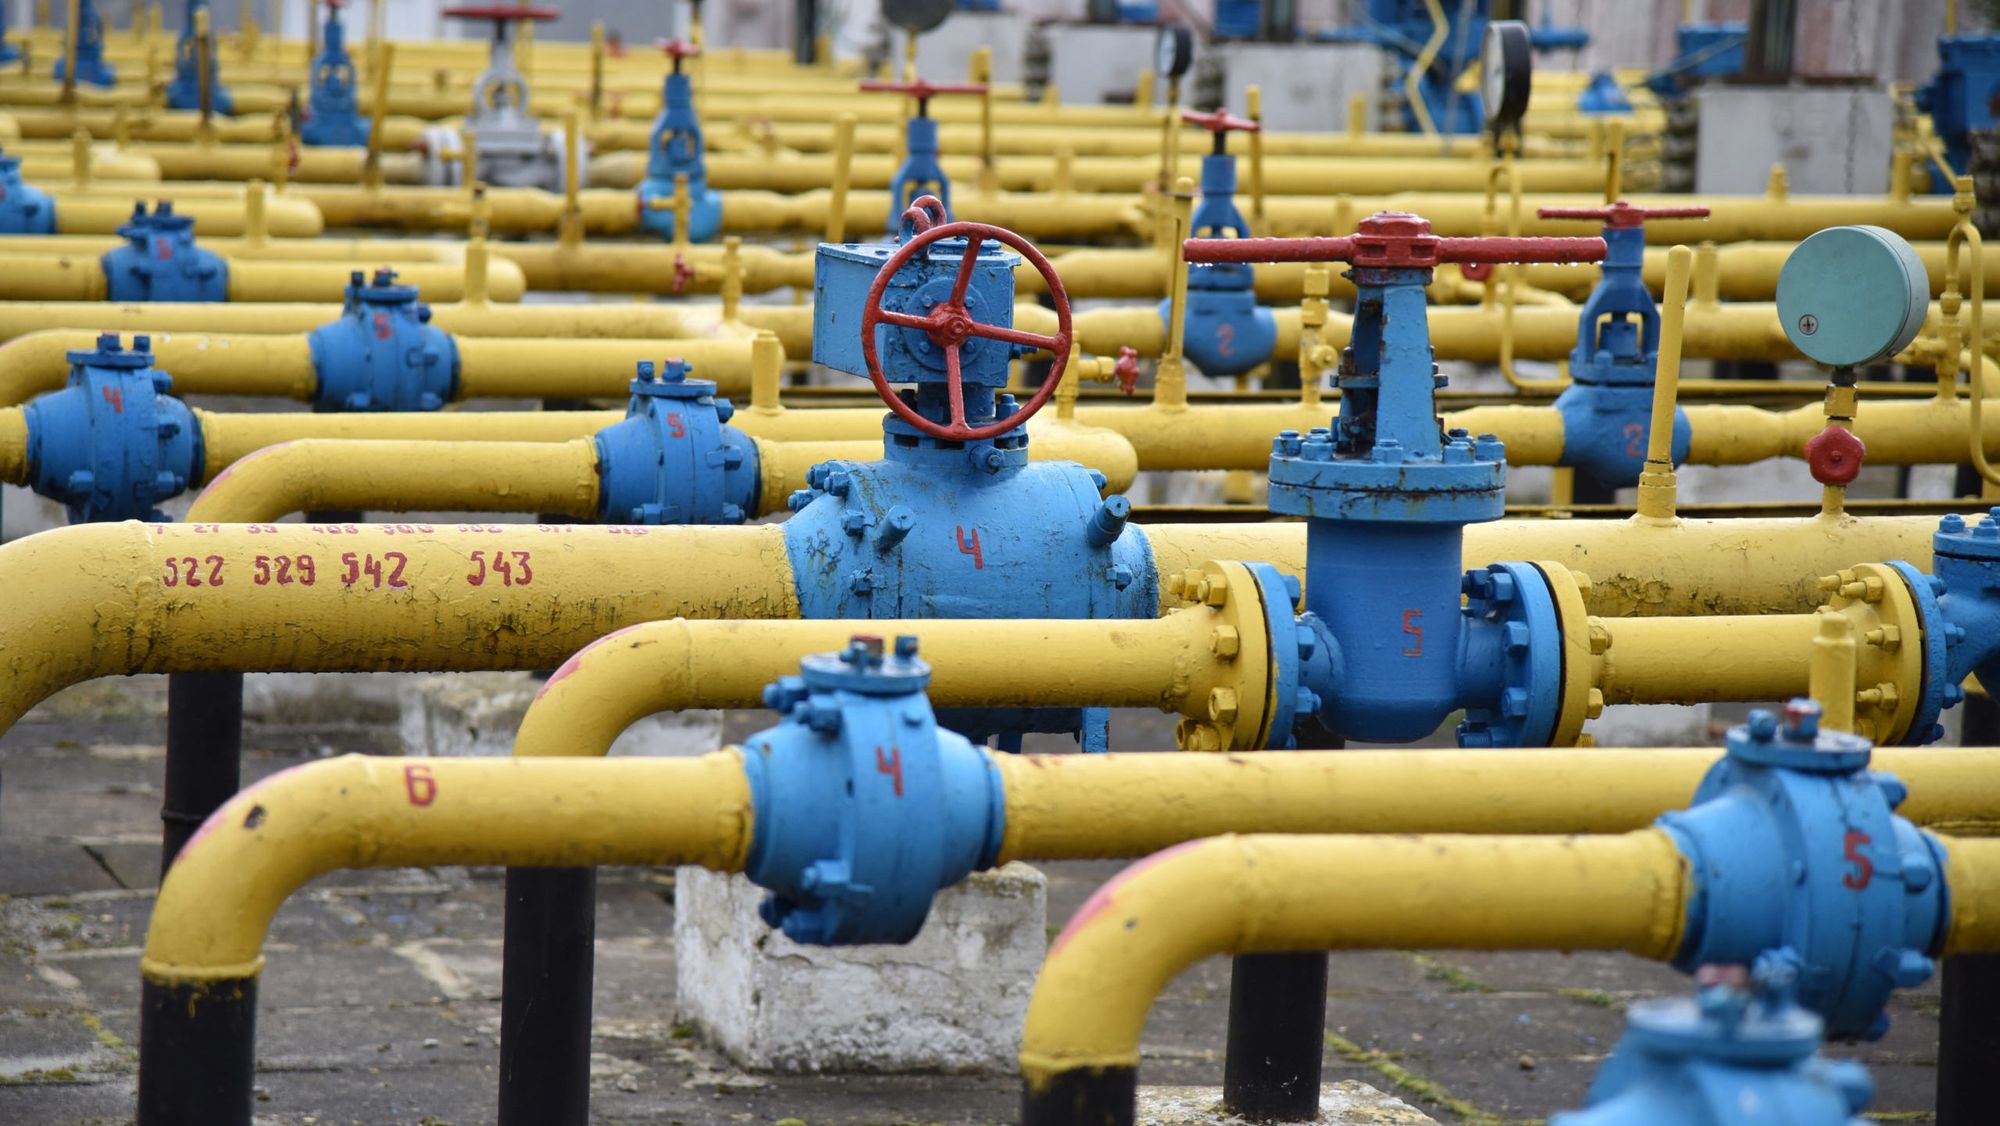 Кыргызстан планирует увеличить закупки газа у России - министр энергетики КР